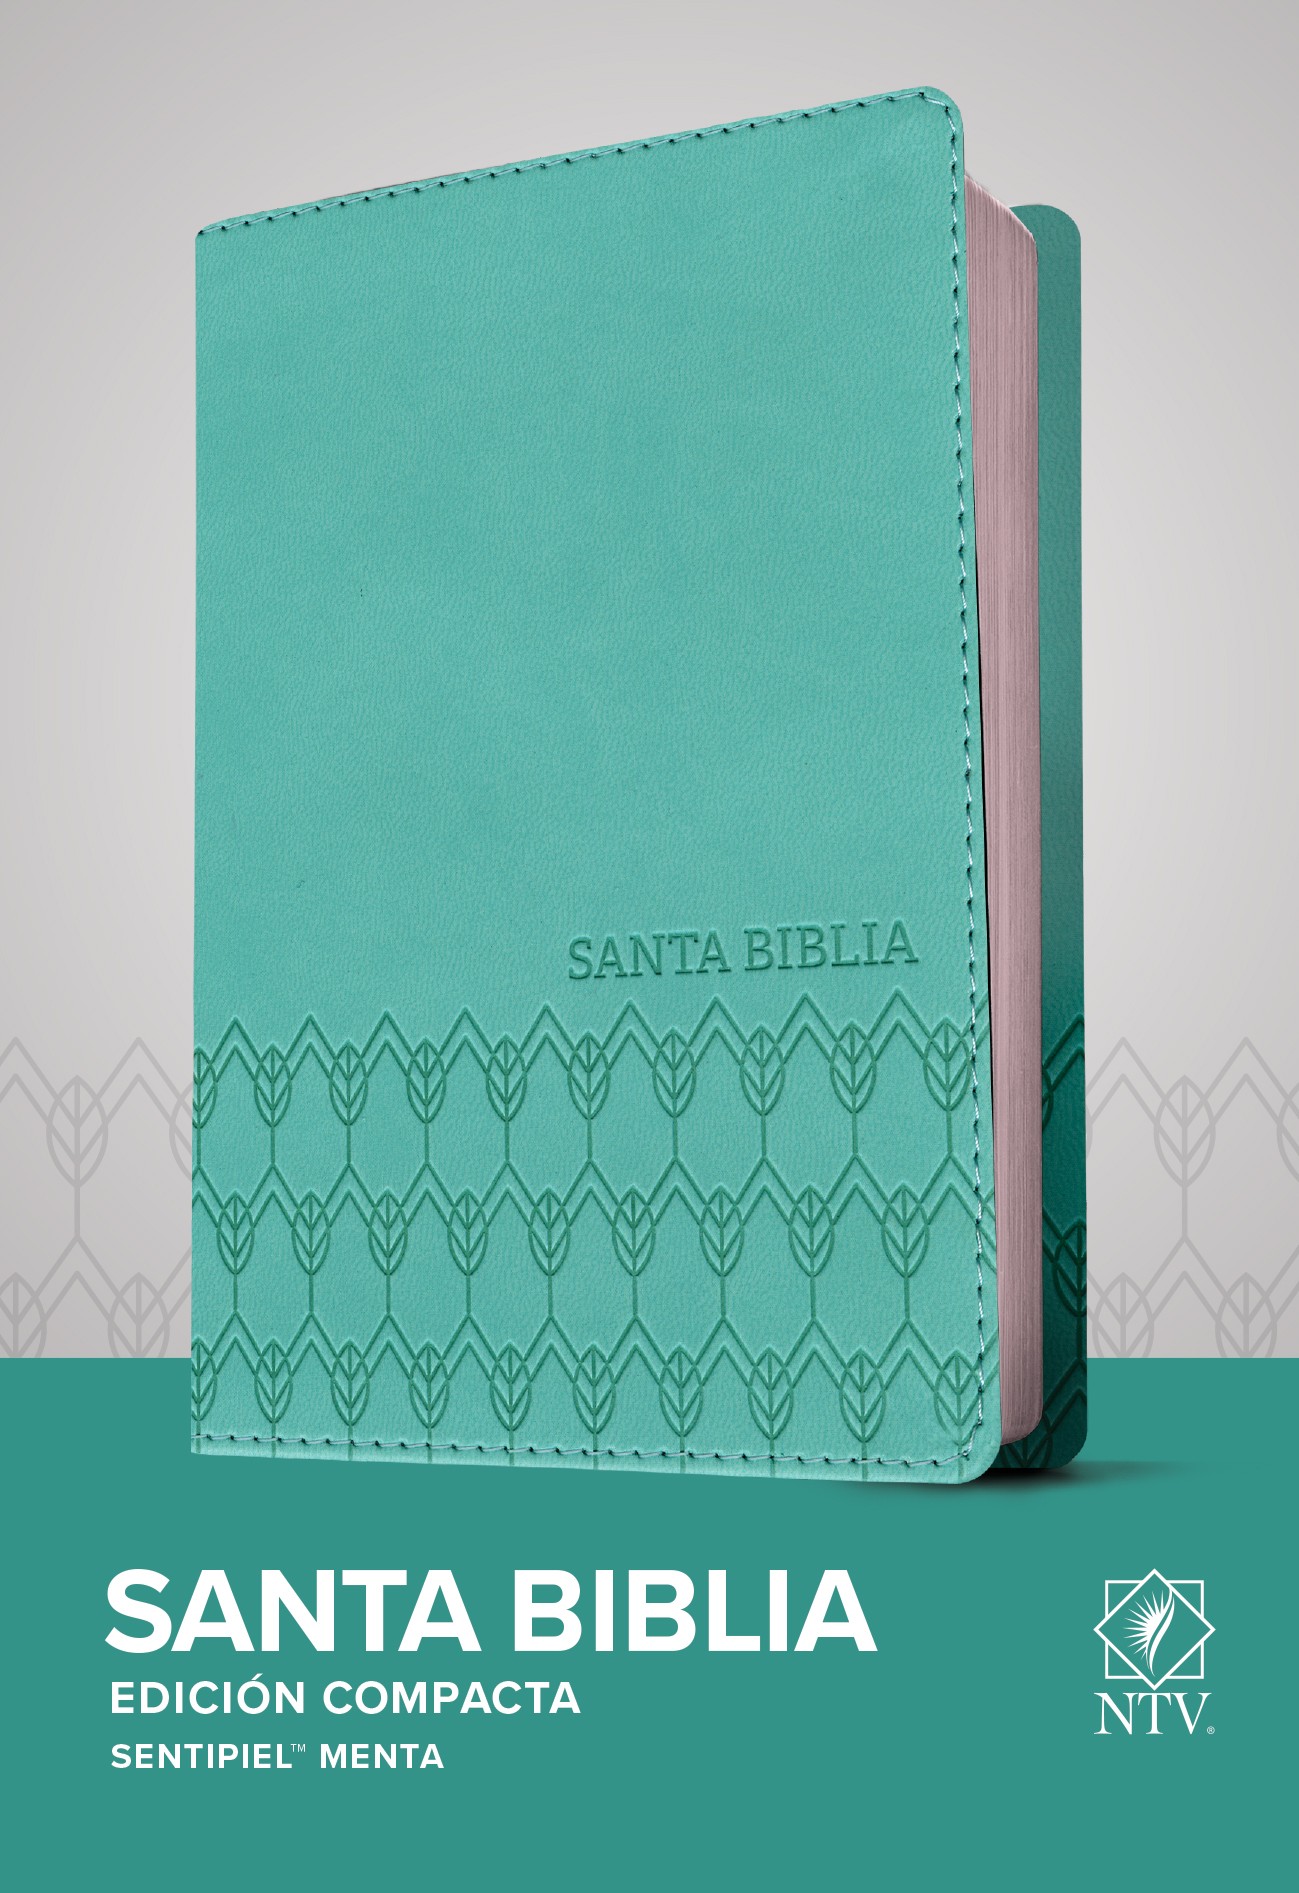  Santa Biblia NTV, Edición compacta